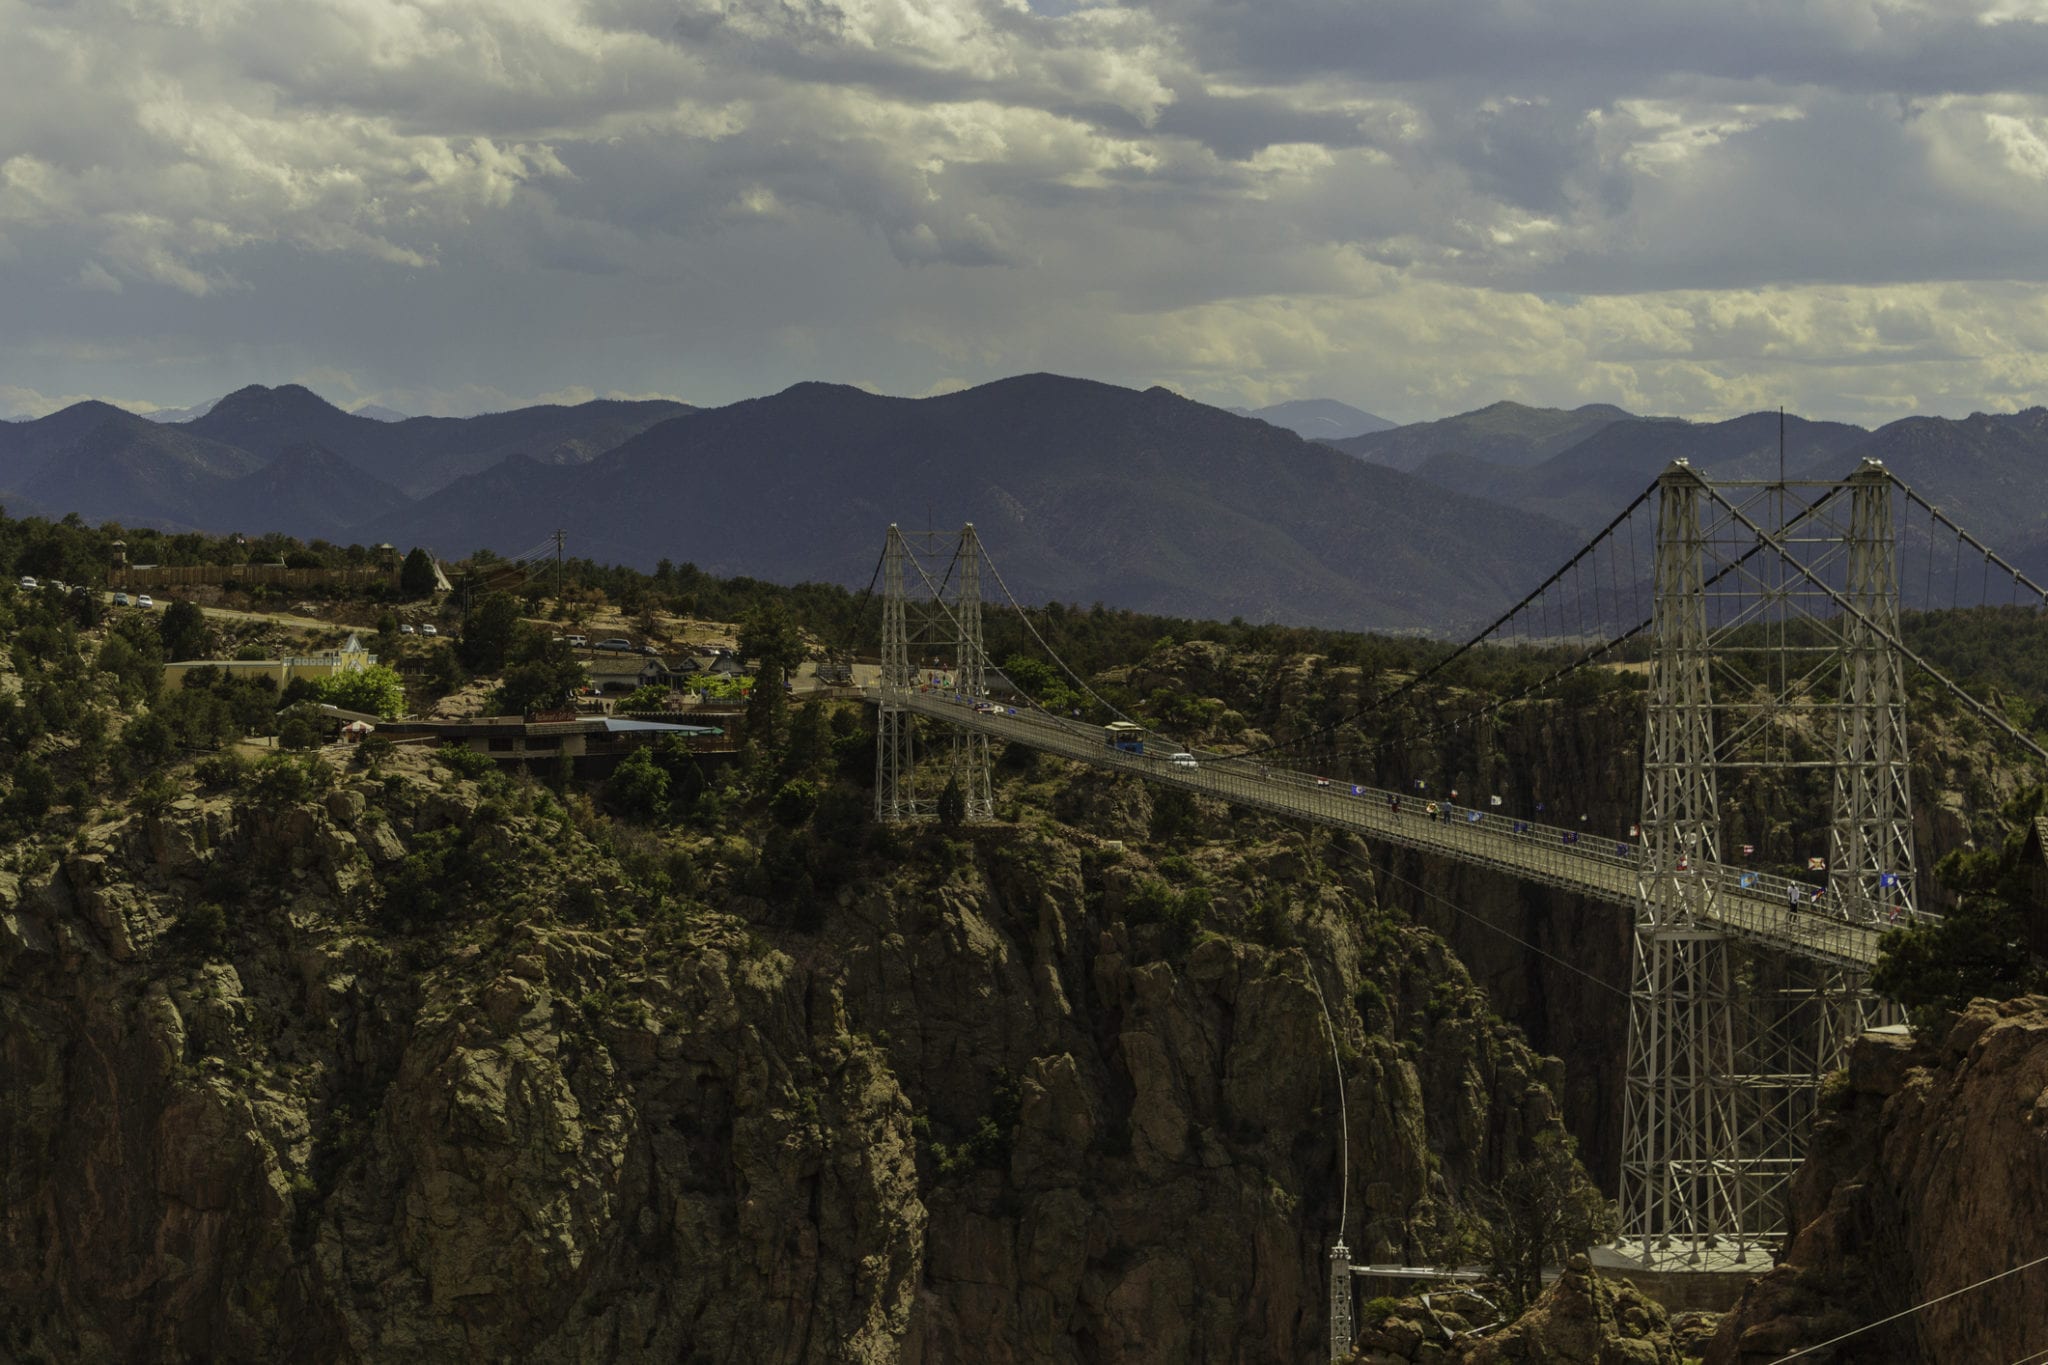 Royal Gorge Suspension Bridge in Canyon City, Colorado.